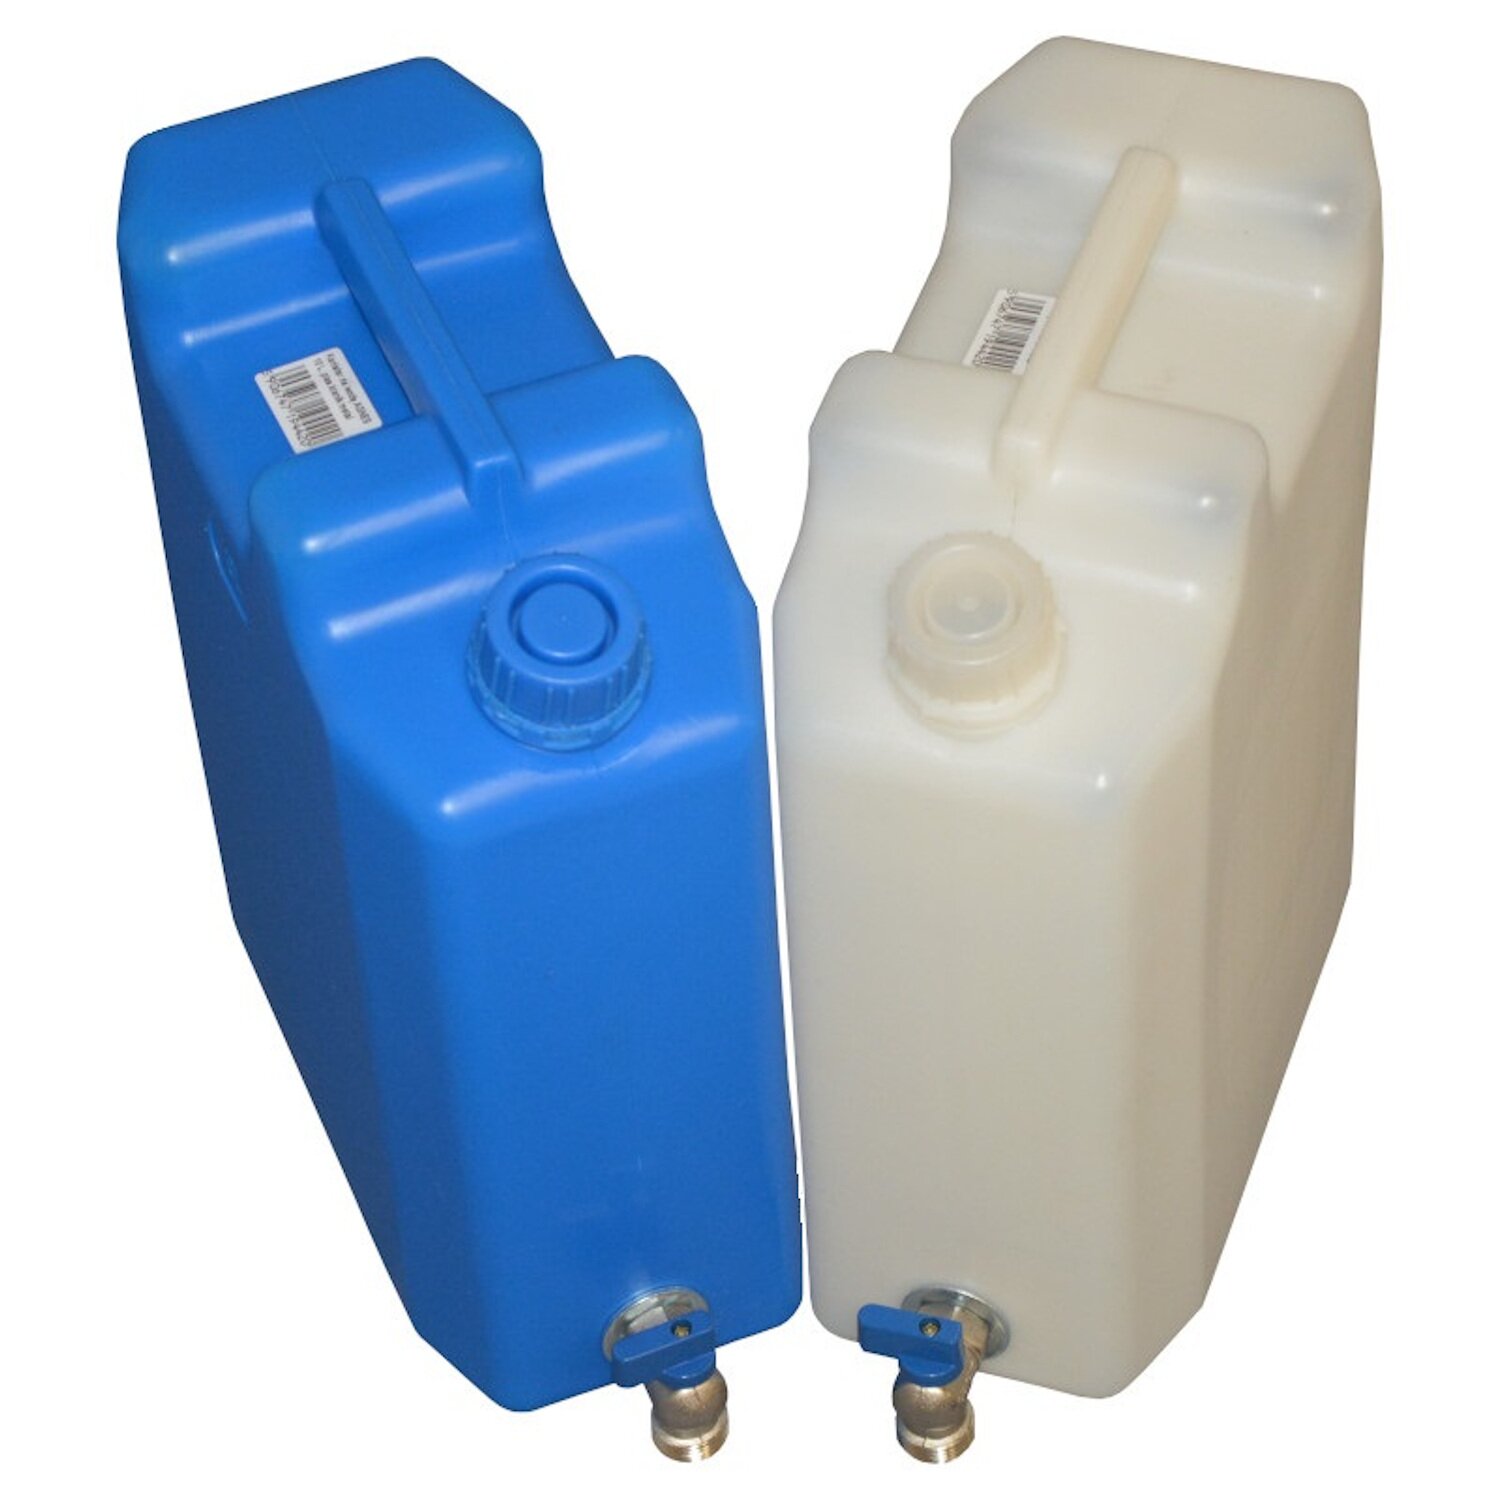 Semptec Trinkwasser Kanister: Faltbarer Wasserkanister mit Zapfhahn, 10  Liter, ideal für Trinkwasser (Wasserkanister Camping Trinkwasser)